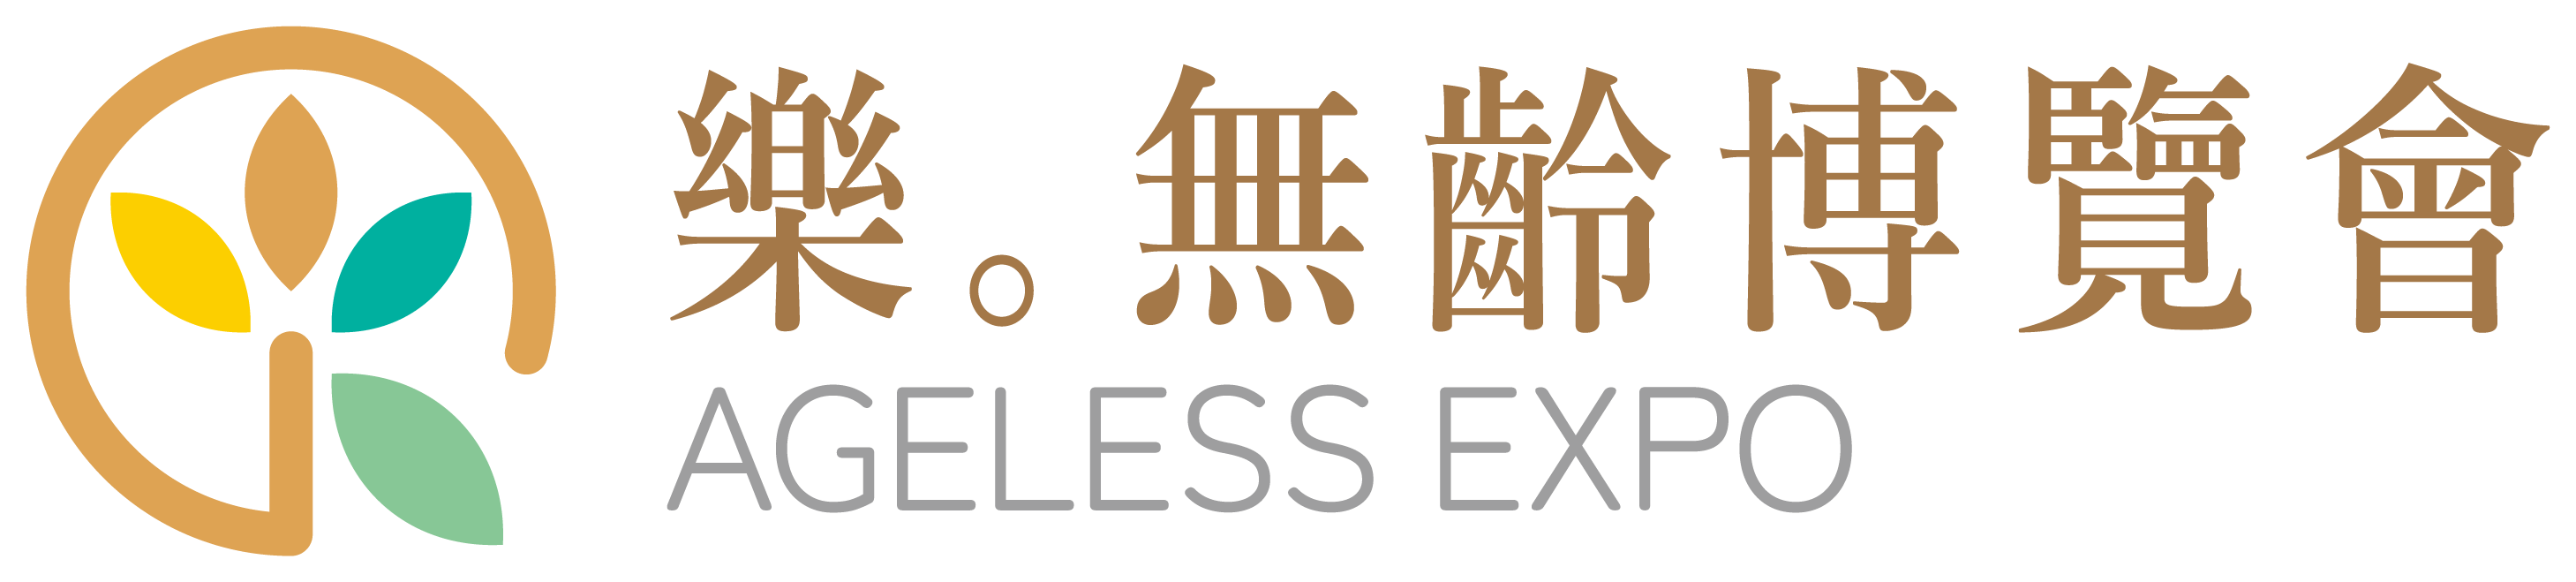 中国台湾国际亚洲老年人设施展览会logo